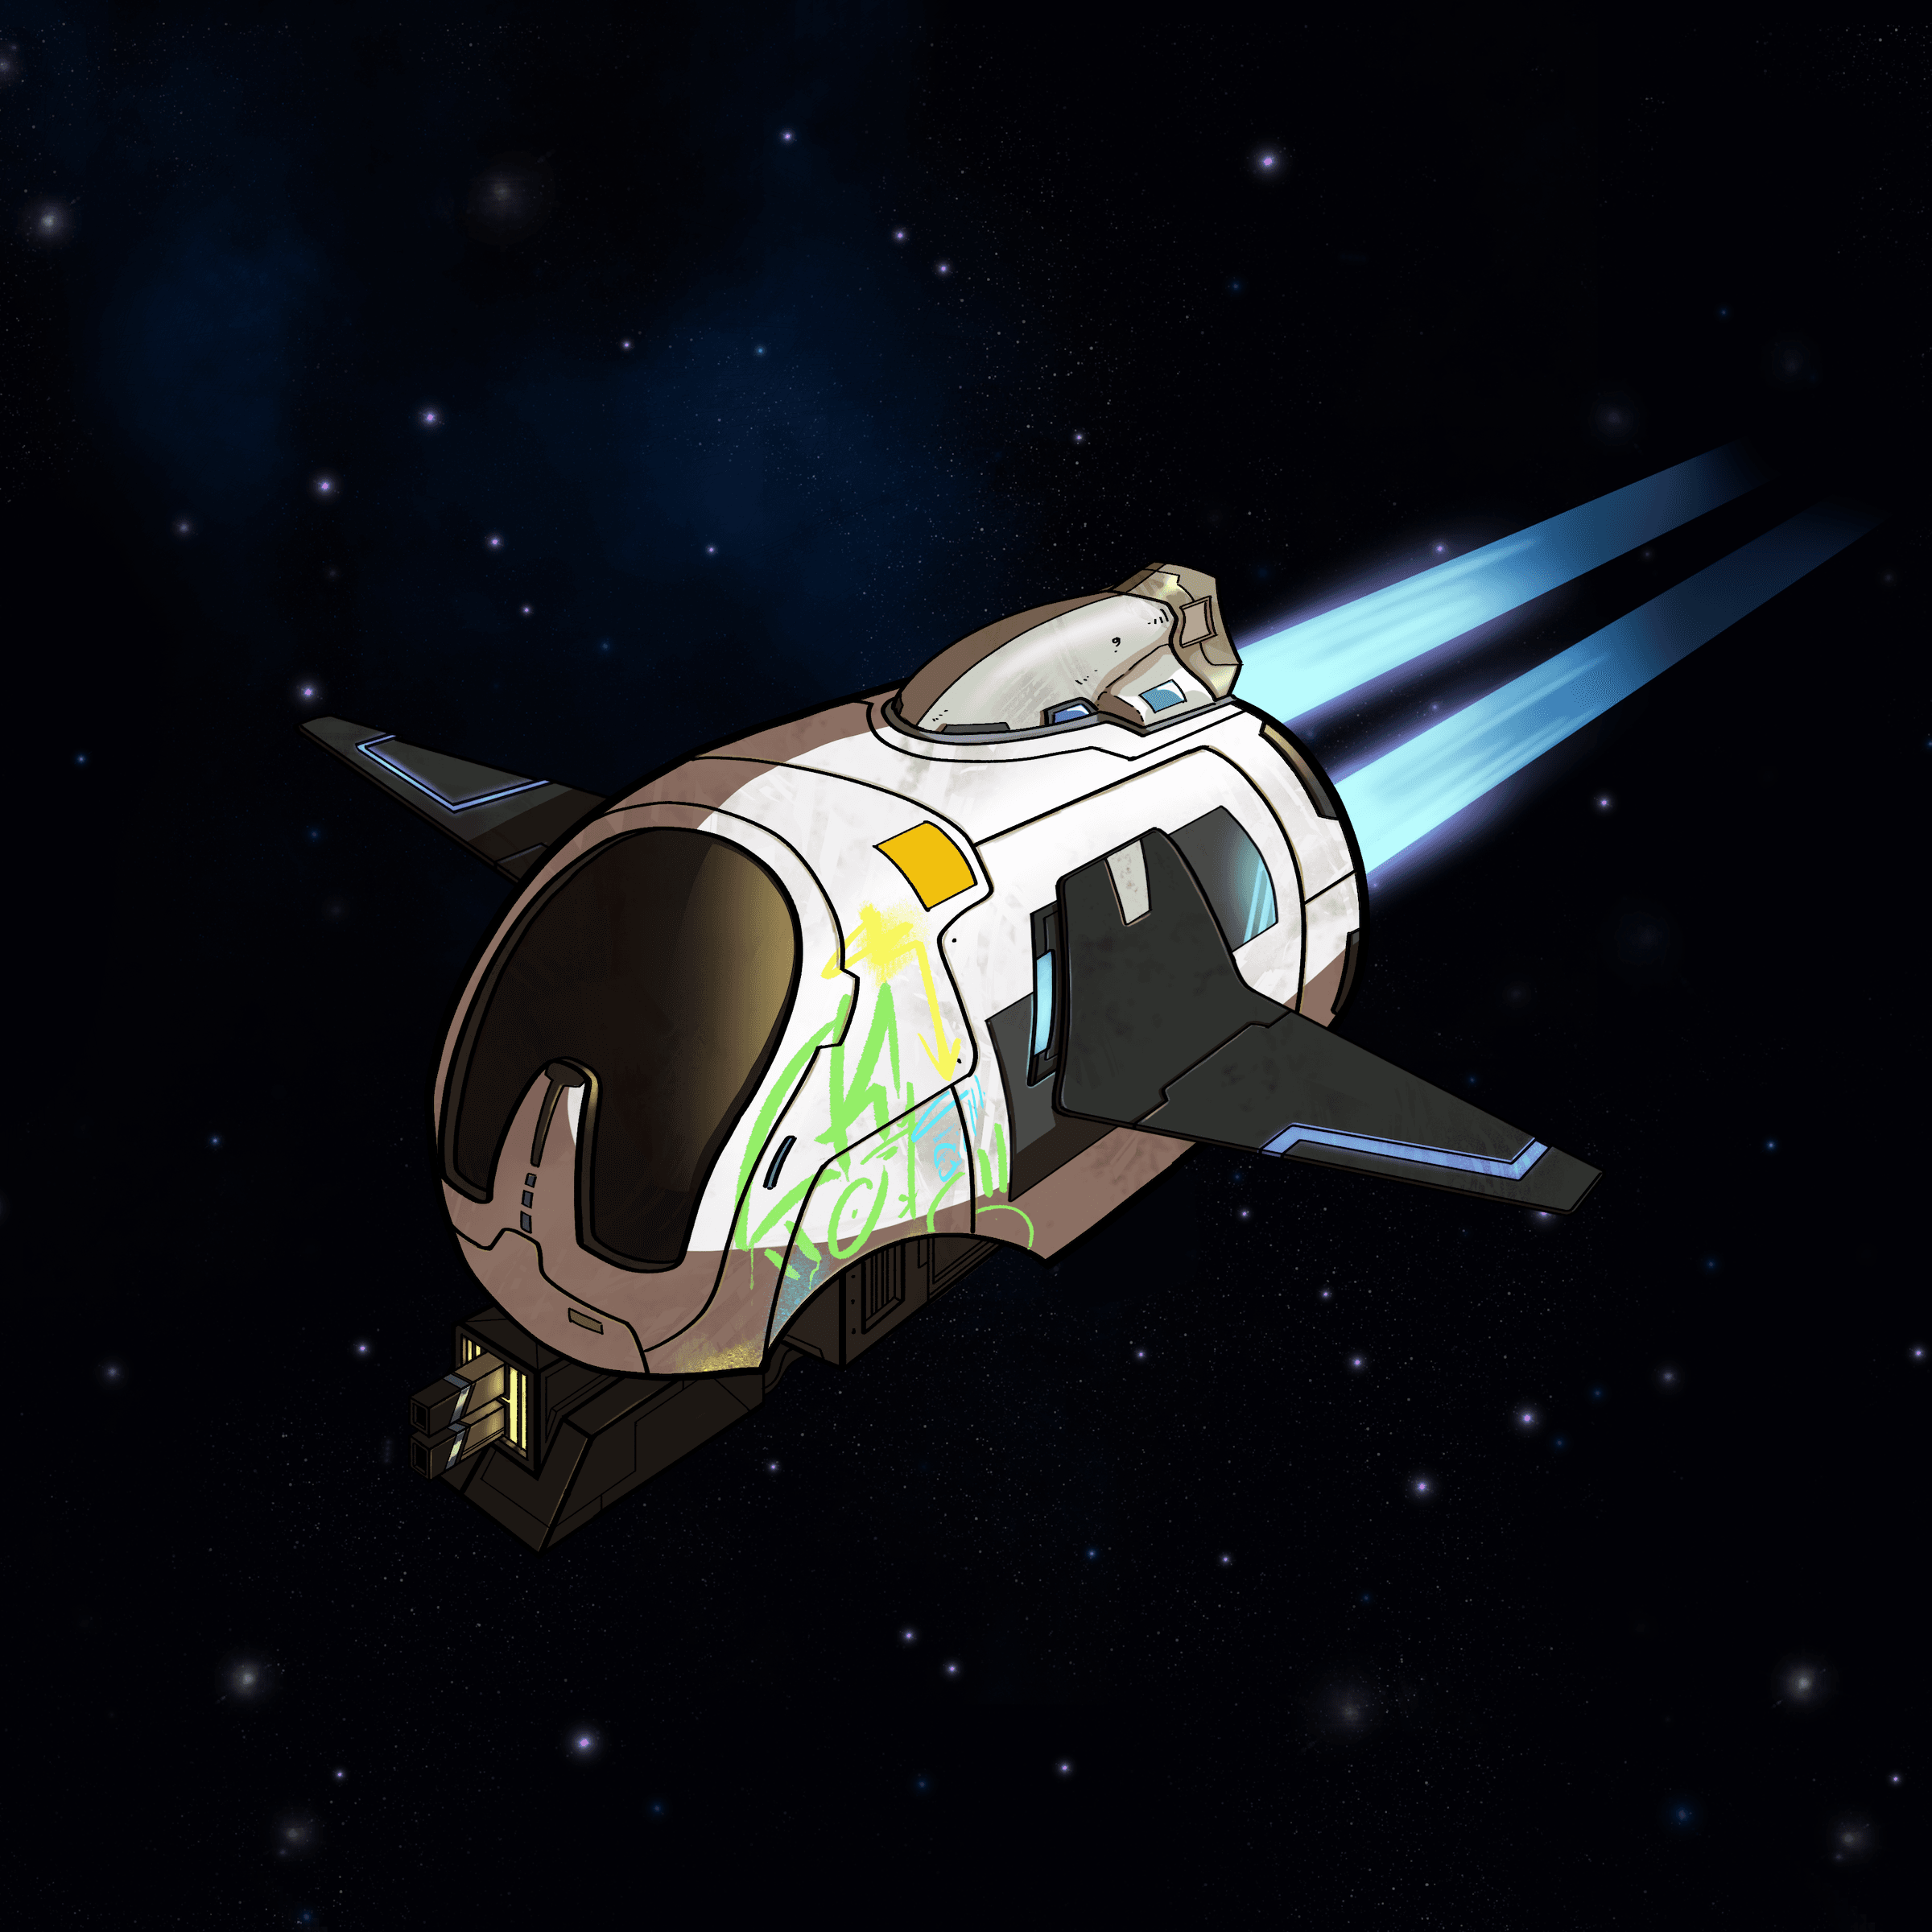 Genesis Spaceship #500